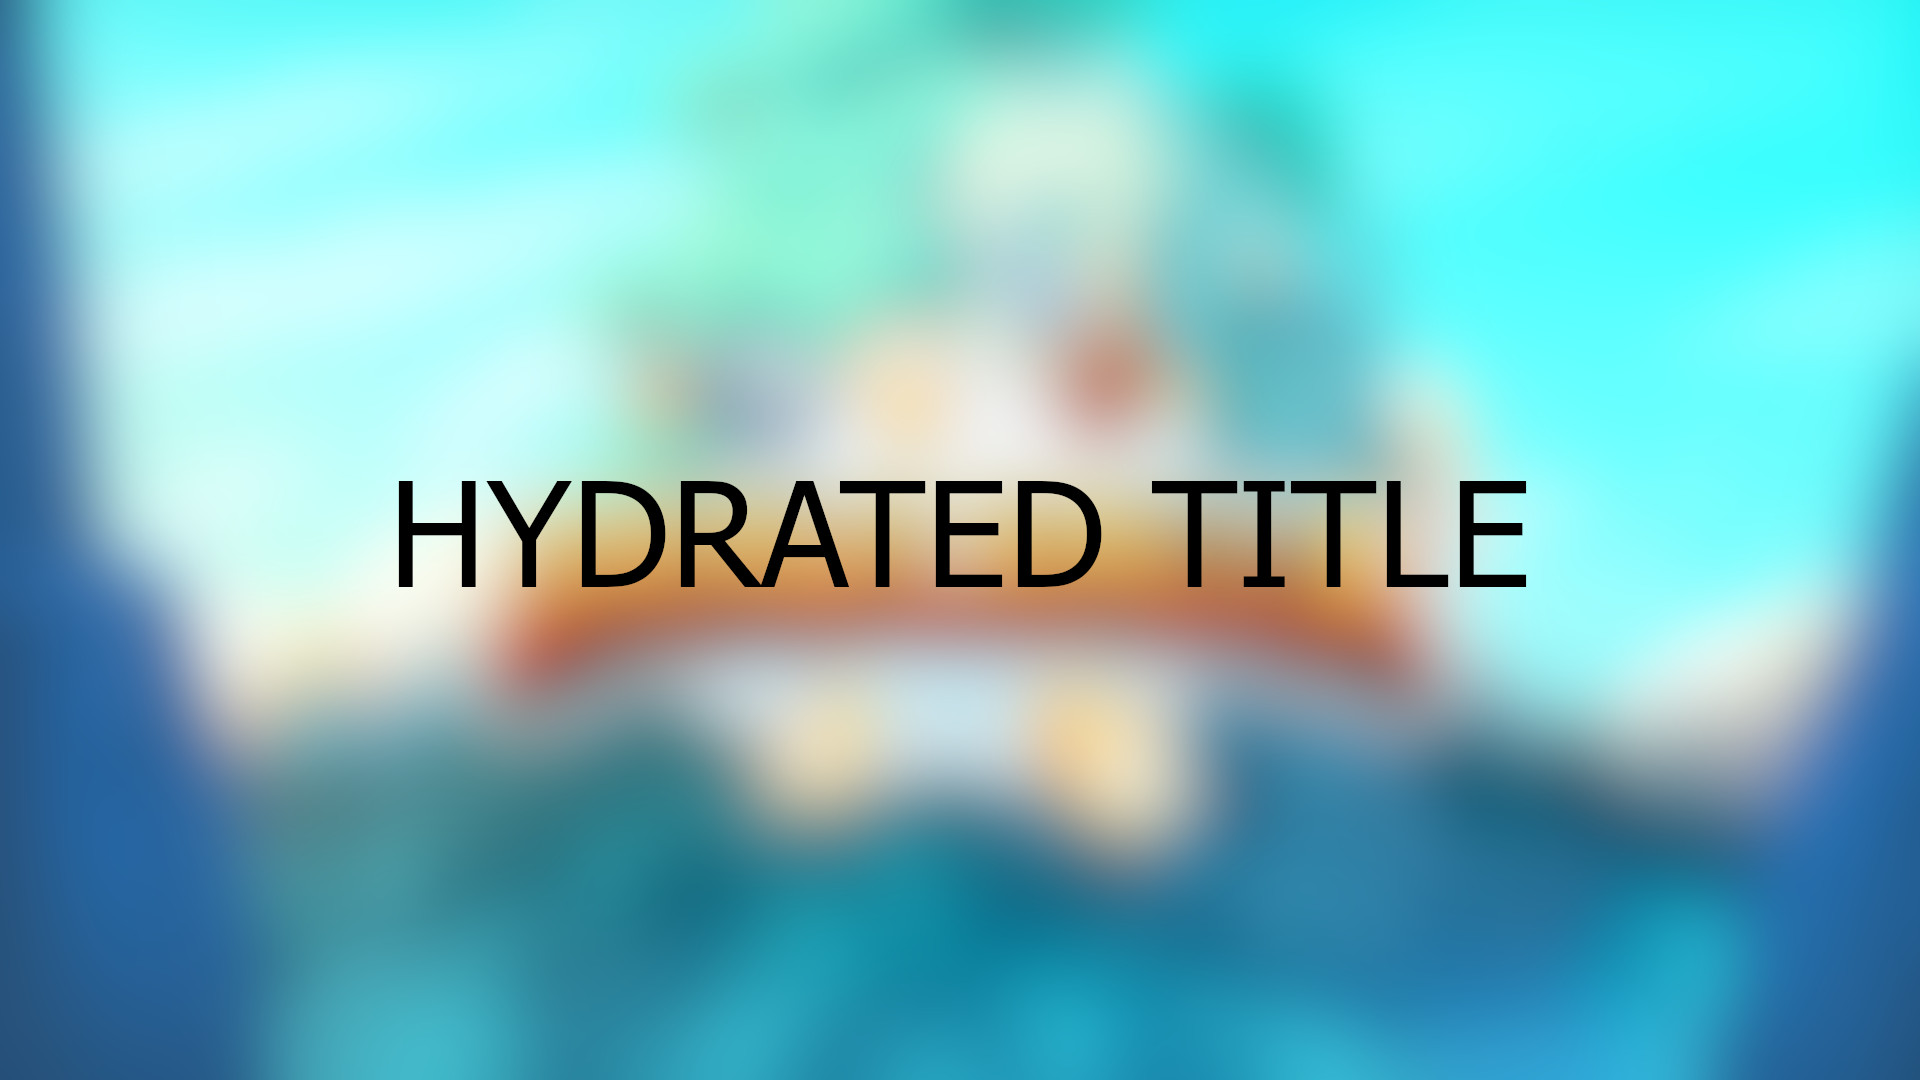 Brawlhalla - Hydrated Title DLC CD Key 0.29 $